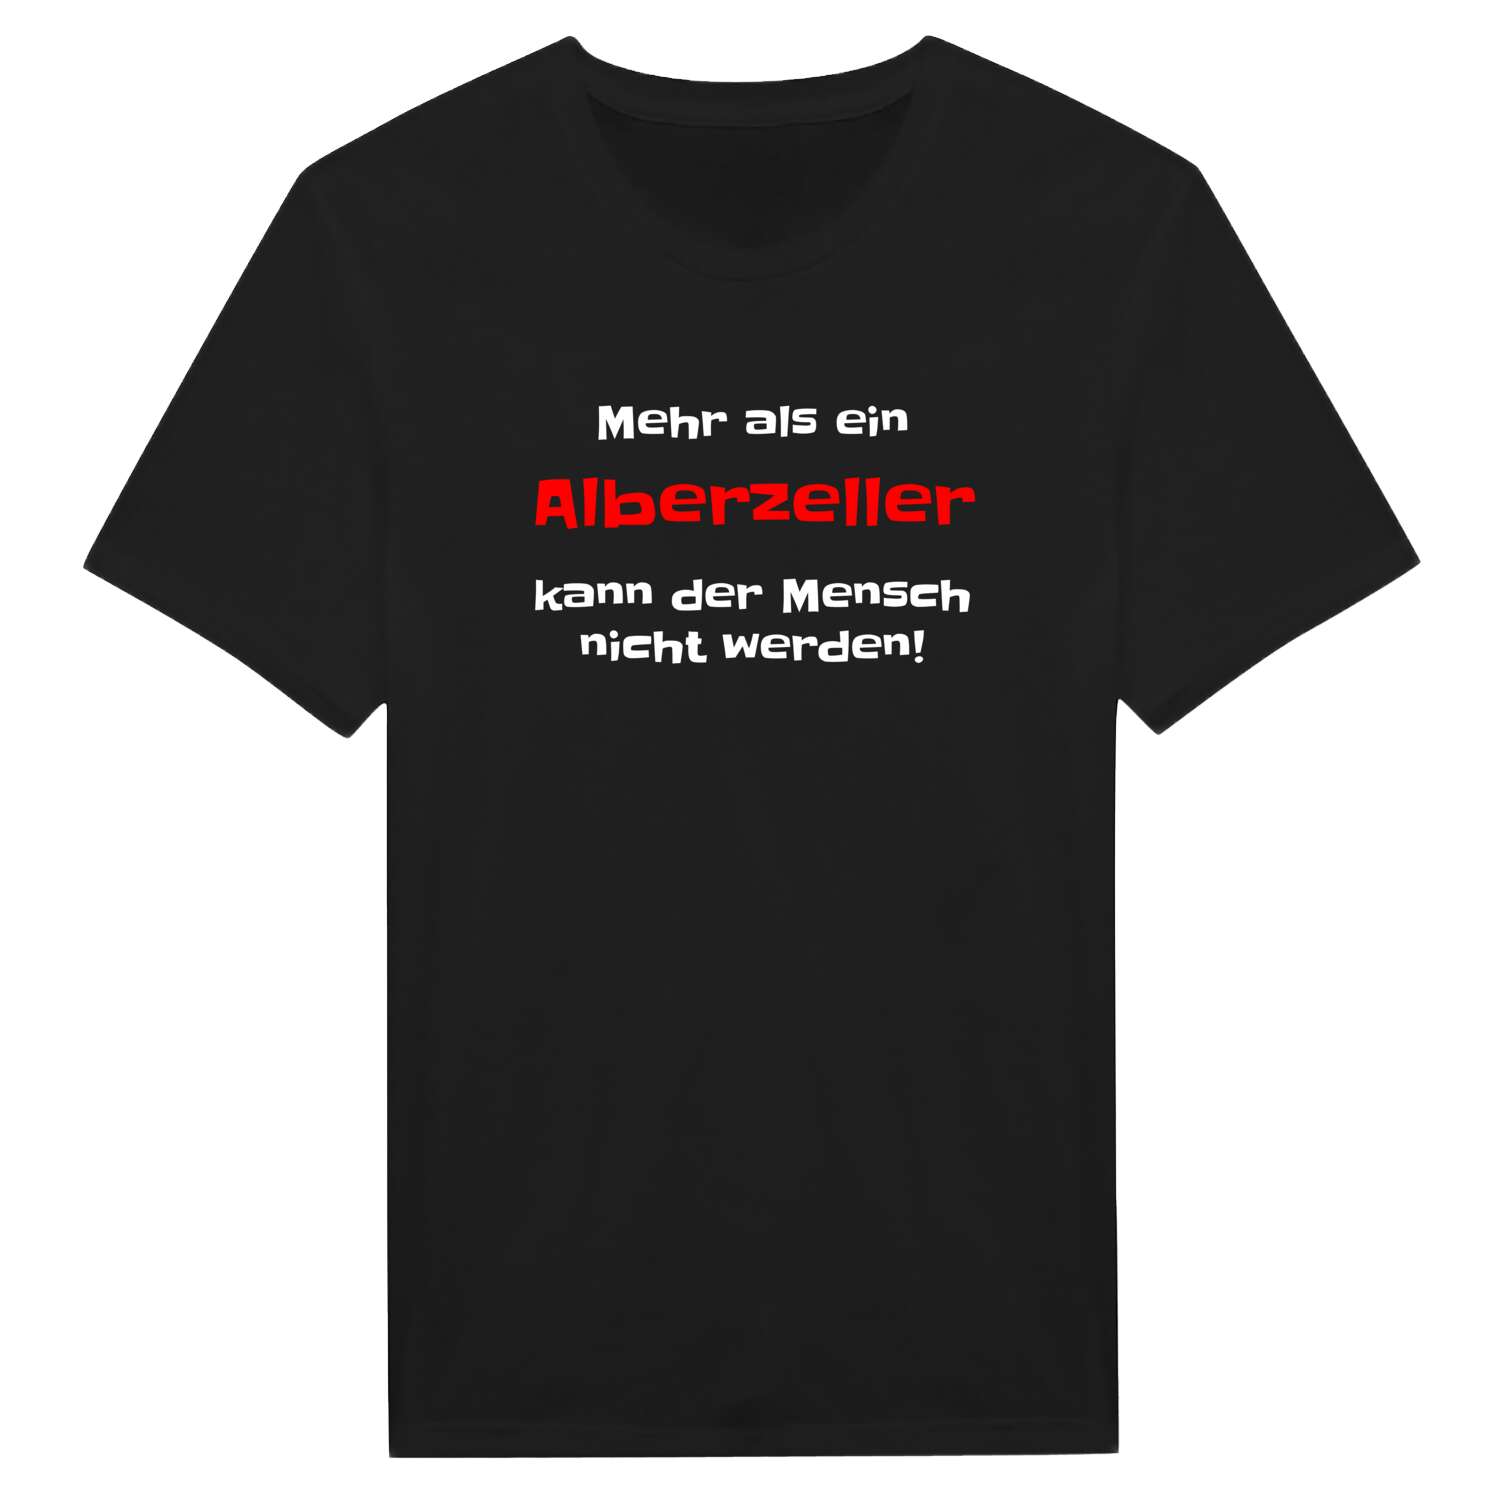 Alberzell T-Shirt »Mehr als ein«